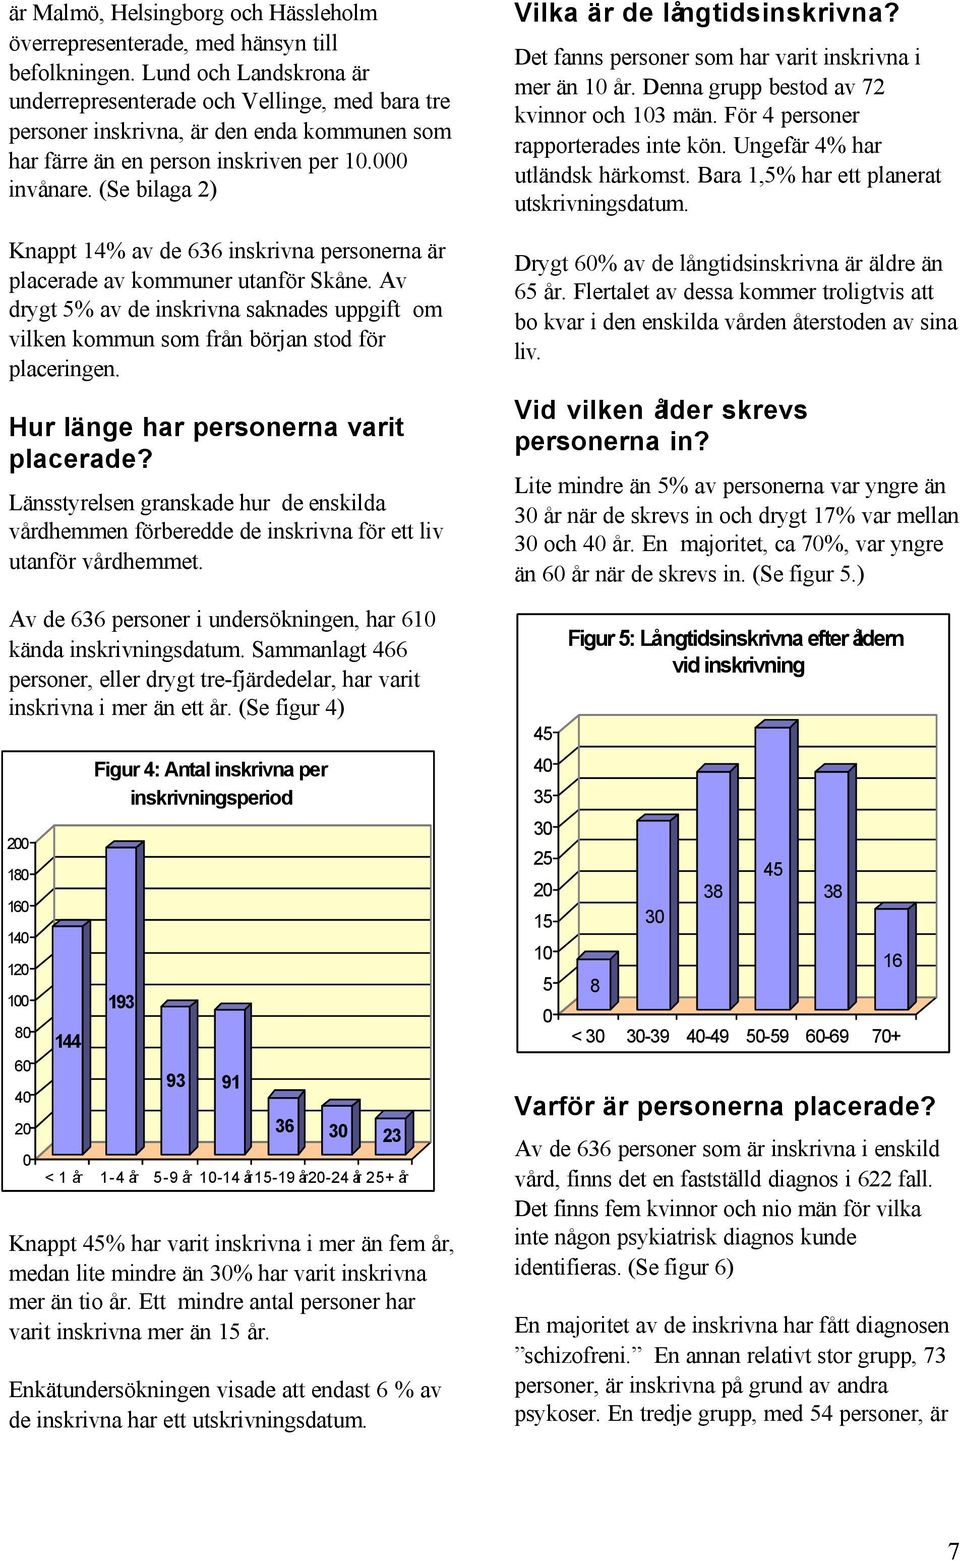 (Se bilaga 2) Knappt 14% av de 636 inskrivna personerna är placerade av kommuner utanför Skåne. Av drygt 5% av de inskrivna saknades uppgift om vilken kommun som från början stod för placeringen.